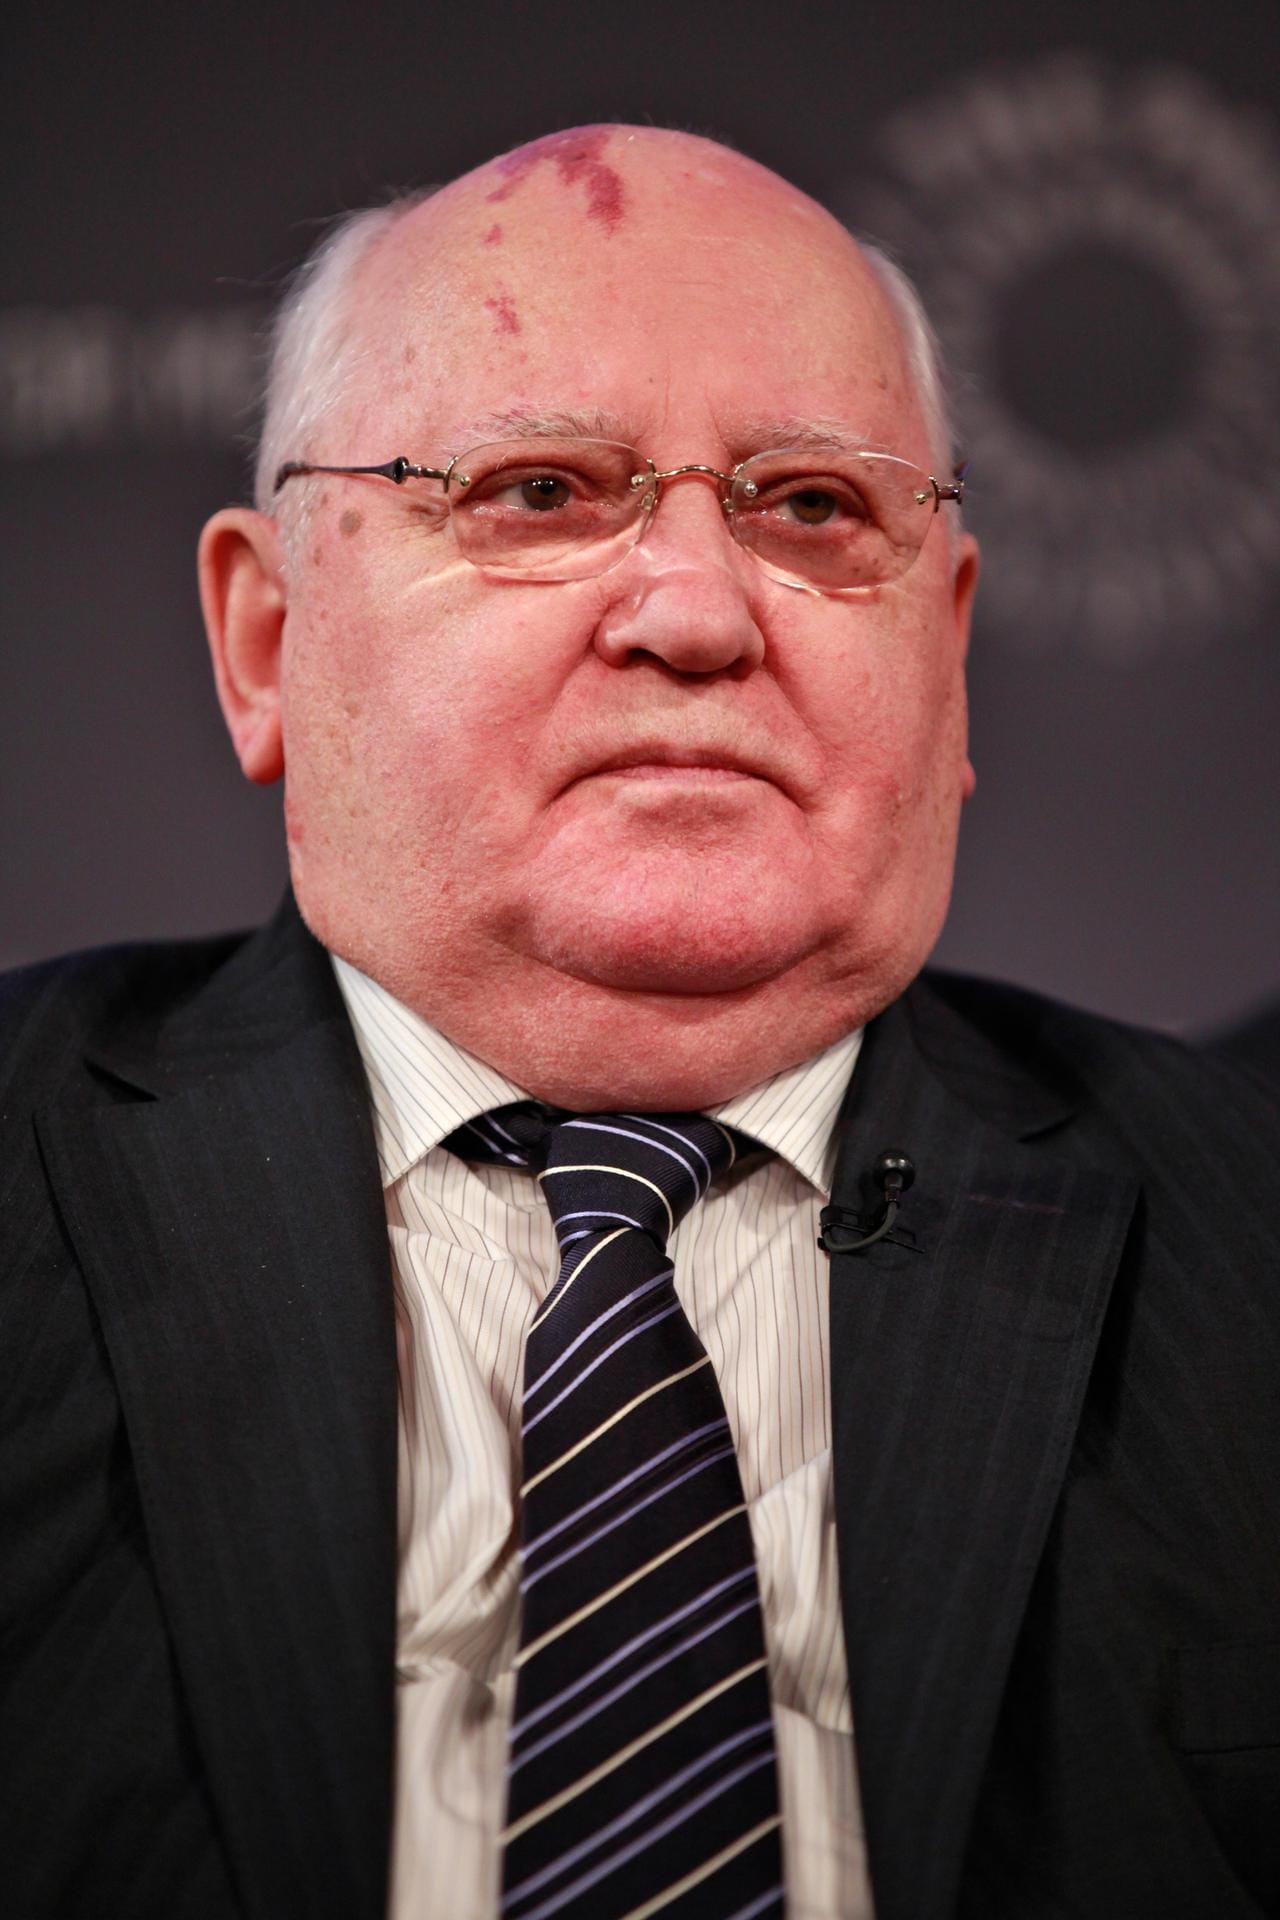 Politiker und sowjetischer Ex-Präsident Michail Gorbatschow: 2. März 1931